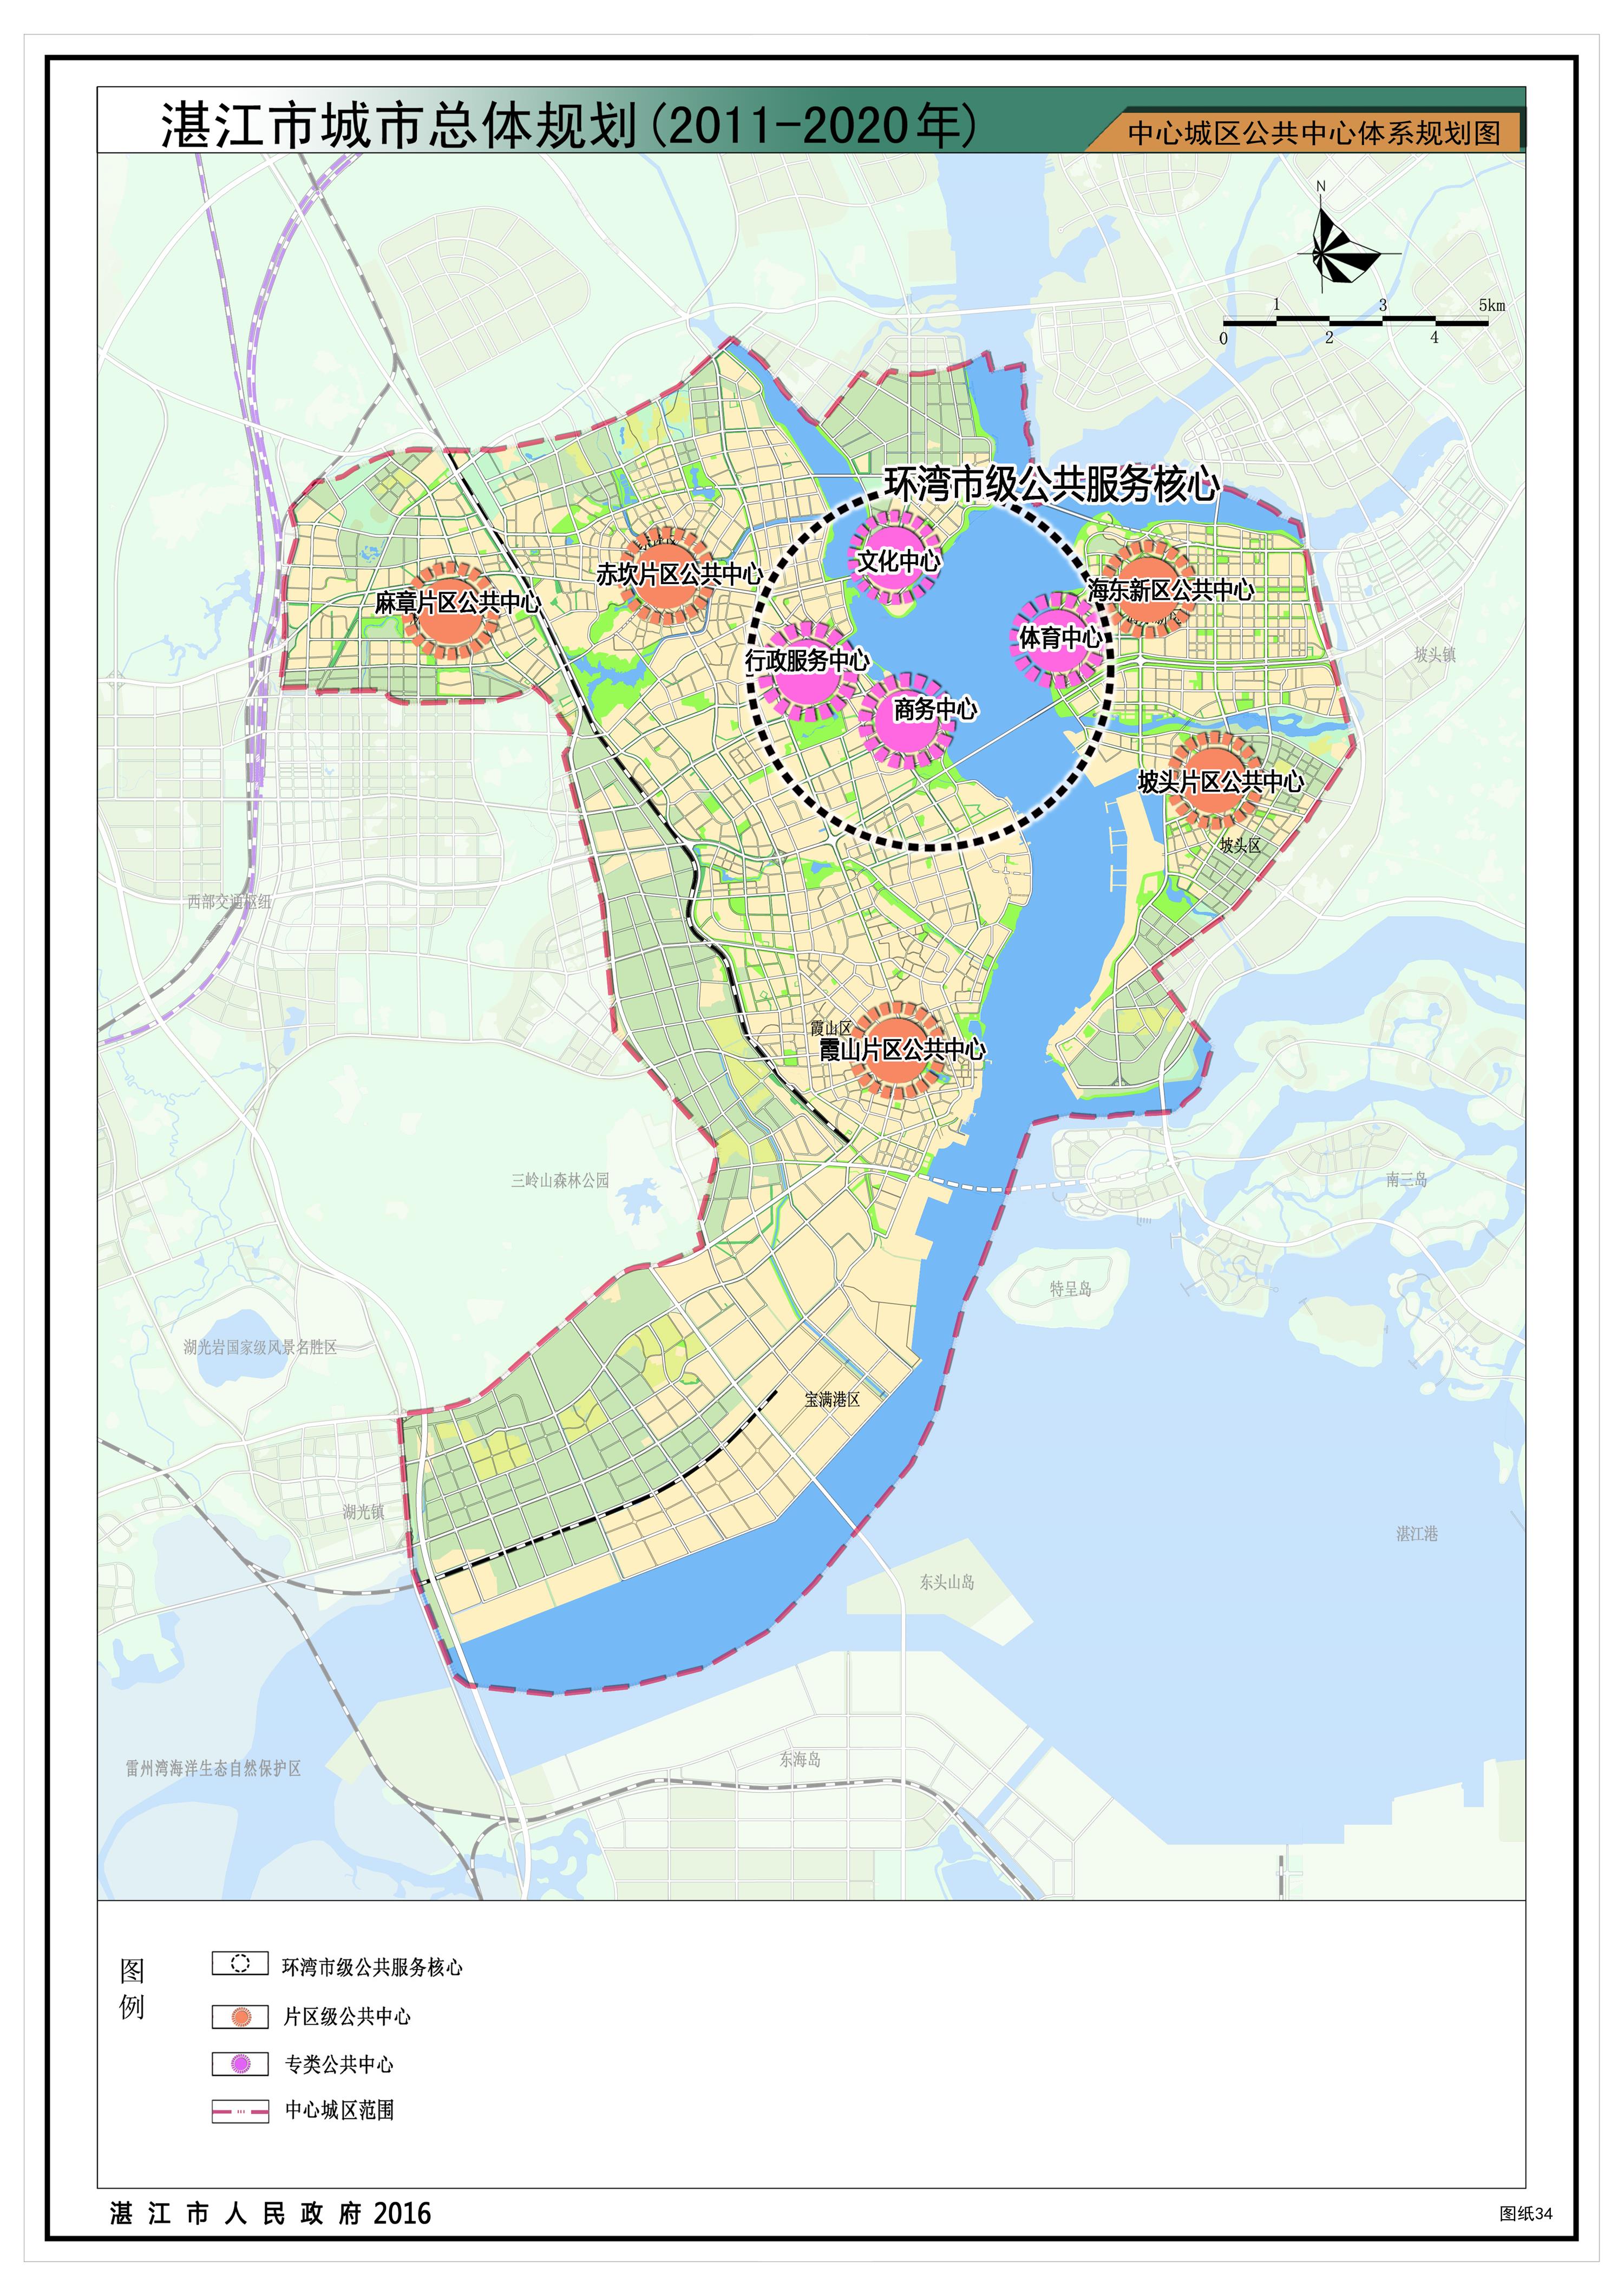 10中心城区公共中心体系规划图.jpg